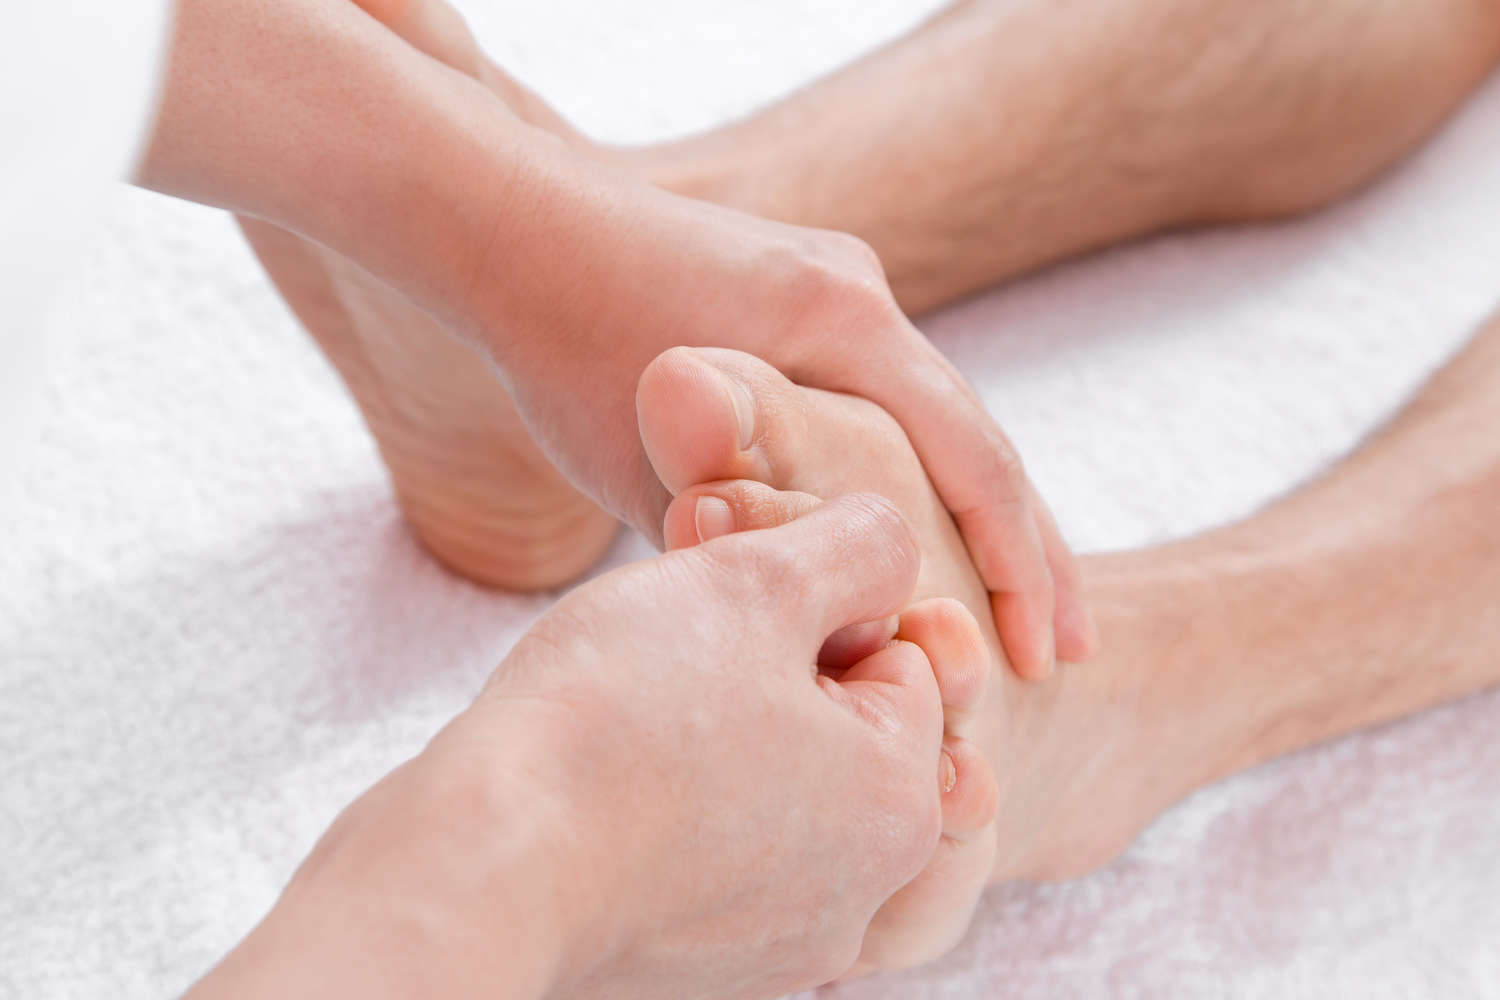   Fussreflexzonen-Massage   kann einen wertvollen Beitrag für körperlichen und seelischen Wohlbefinden leisten. 